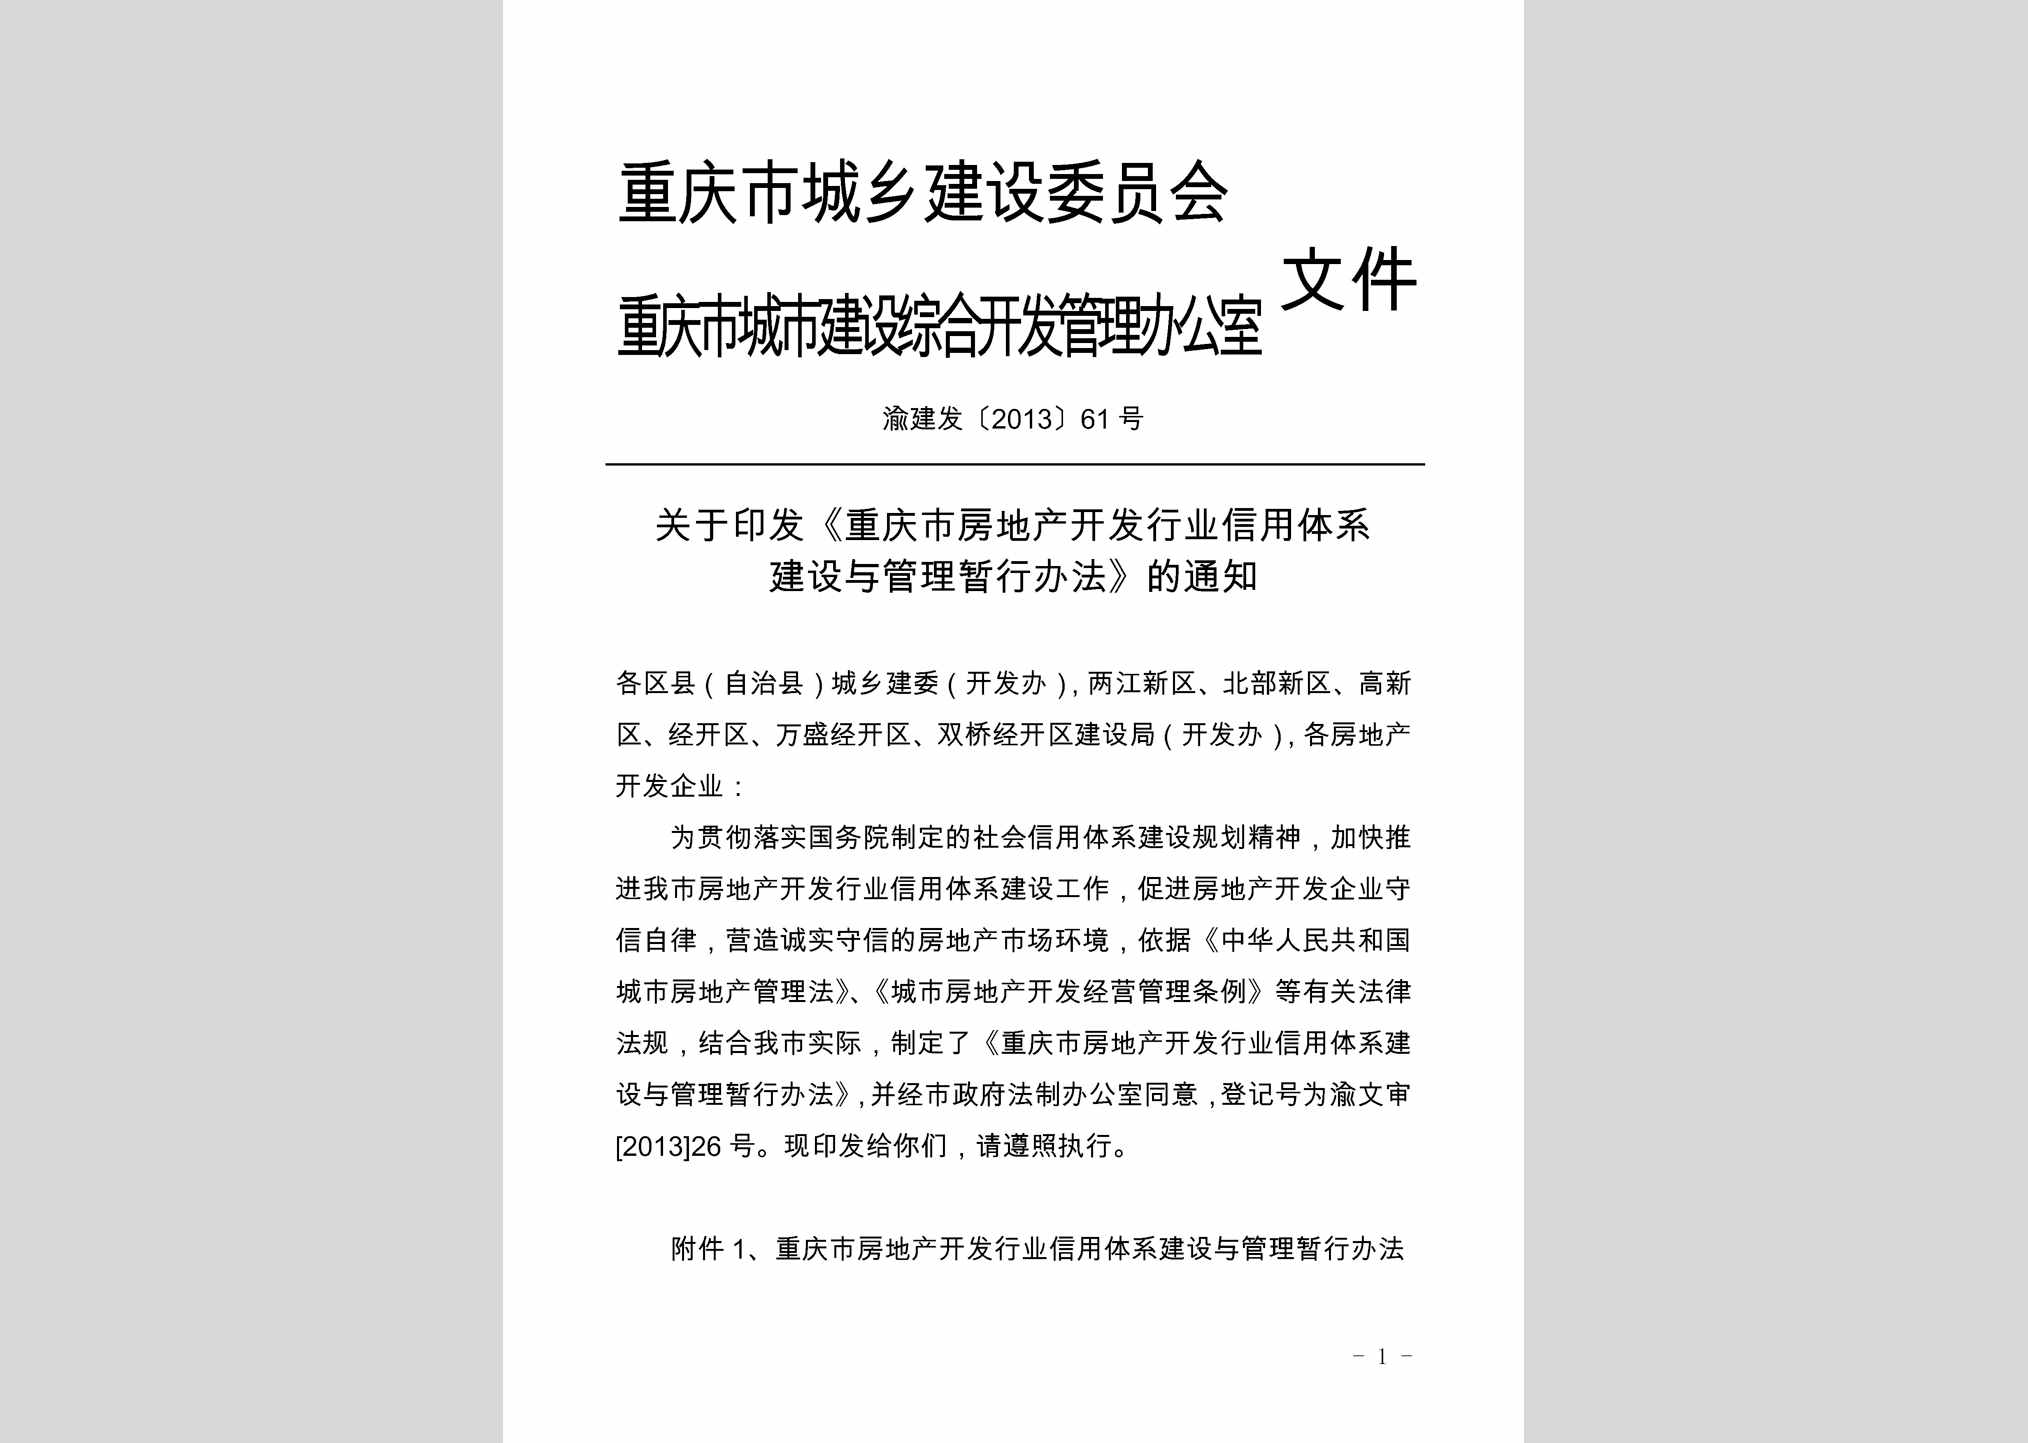 渝建发[2013]61号：关于印发《重庆市房地产开发行业信用体系建设与管理暂行办法》的通知